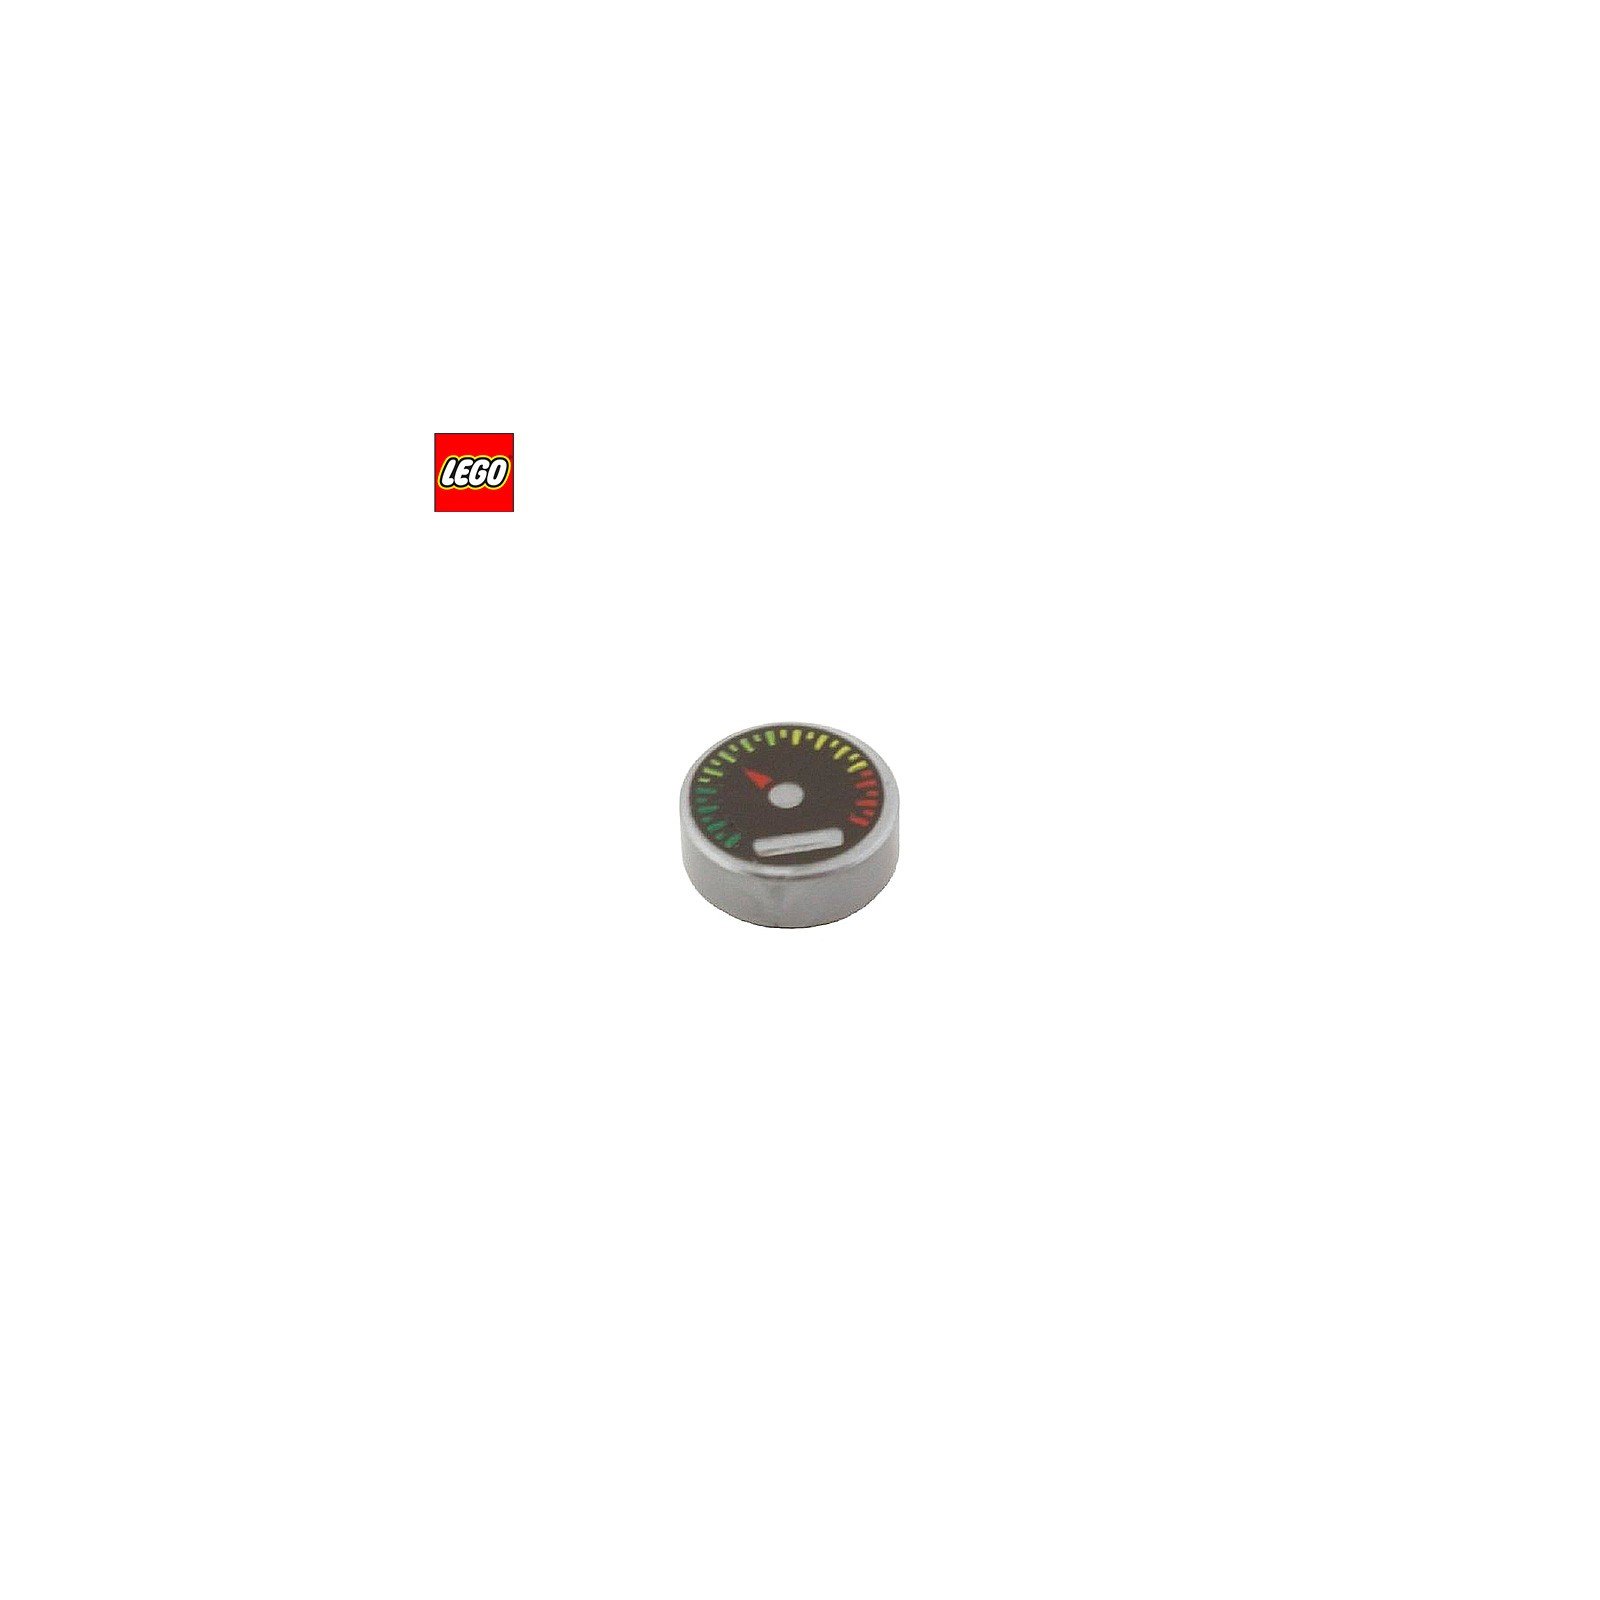 Tuile ronde 1x1 motif Cadran à aiguille - Pièce LEGO® 13541